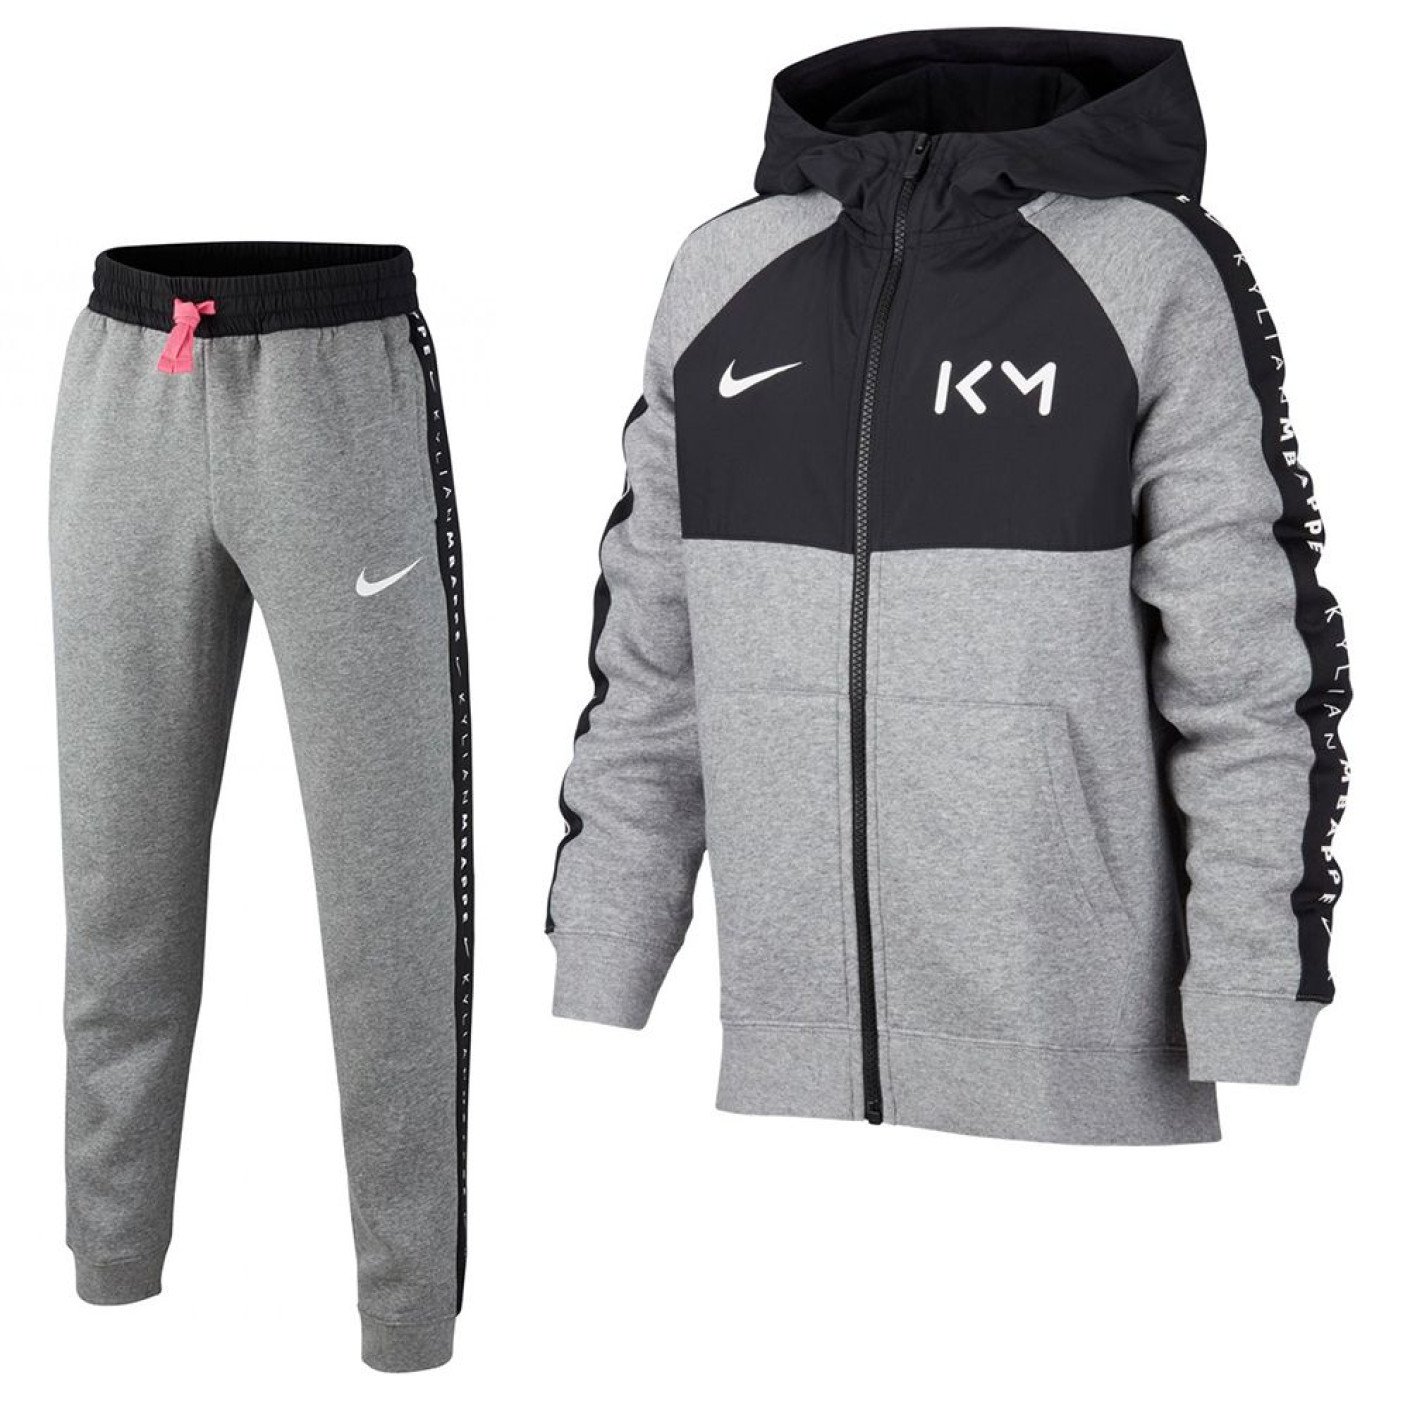 Nike Kylian Mbappe Fleece Trainingspak Kids Grijs Zwart Roze